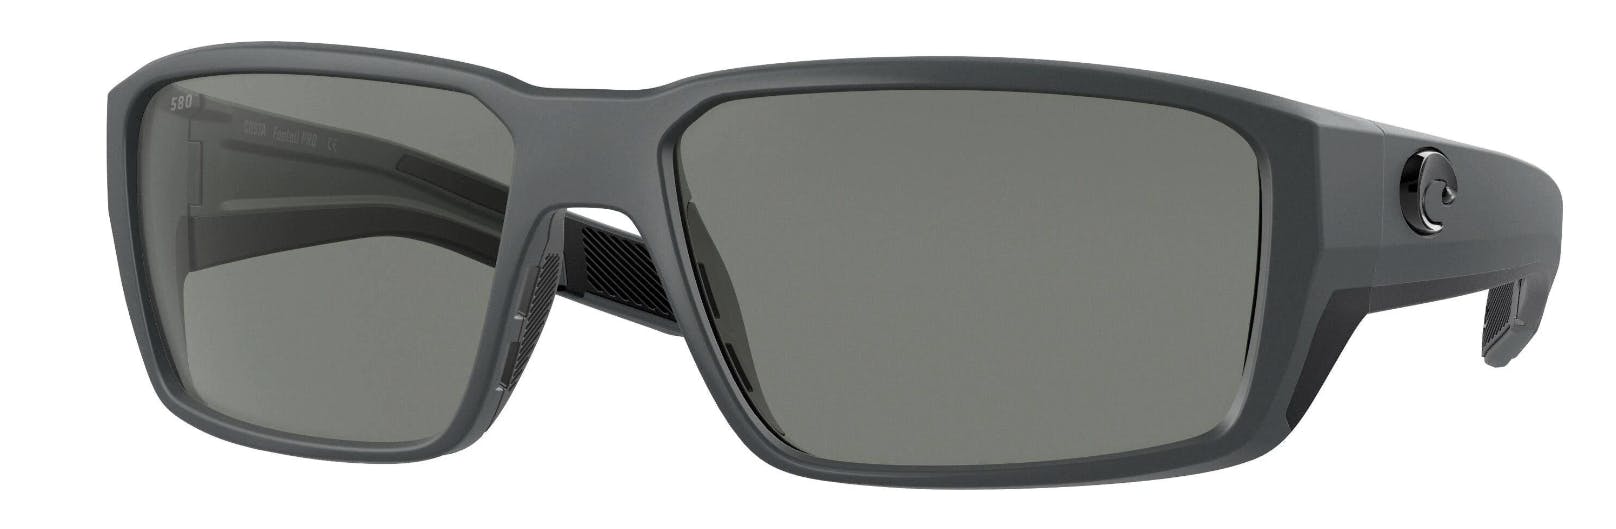 The Costa Del Mar Fantail Pro Sunglasses.